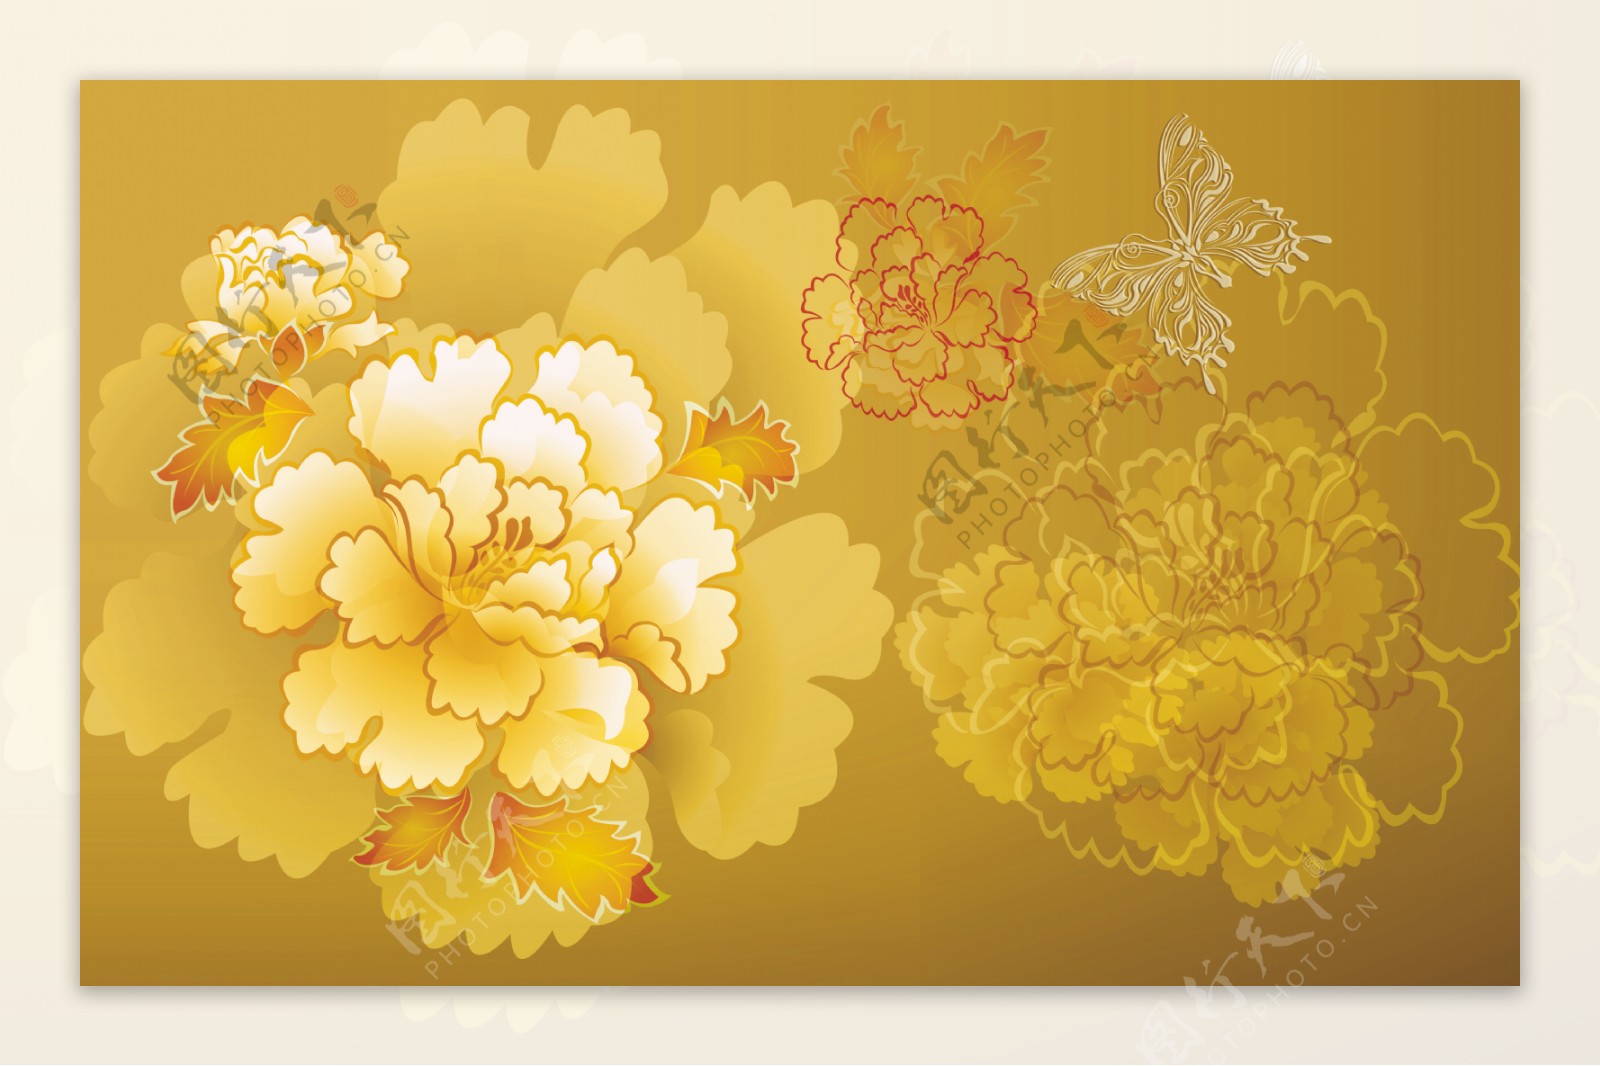 黄色牡丹花背景墙